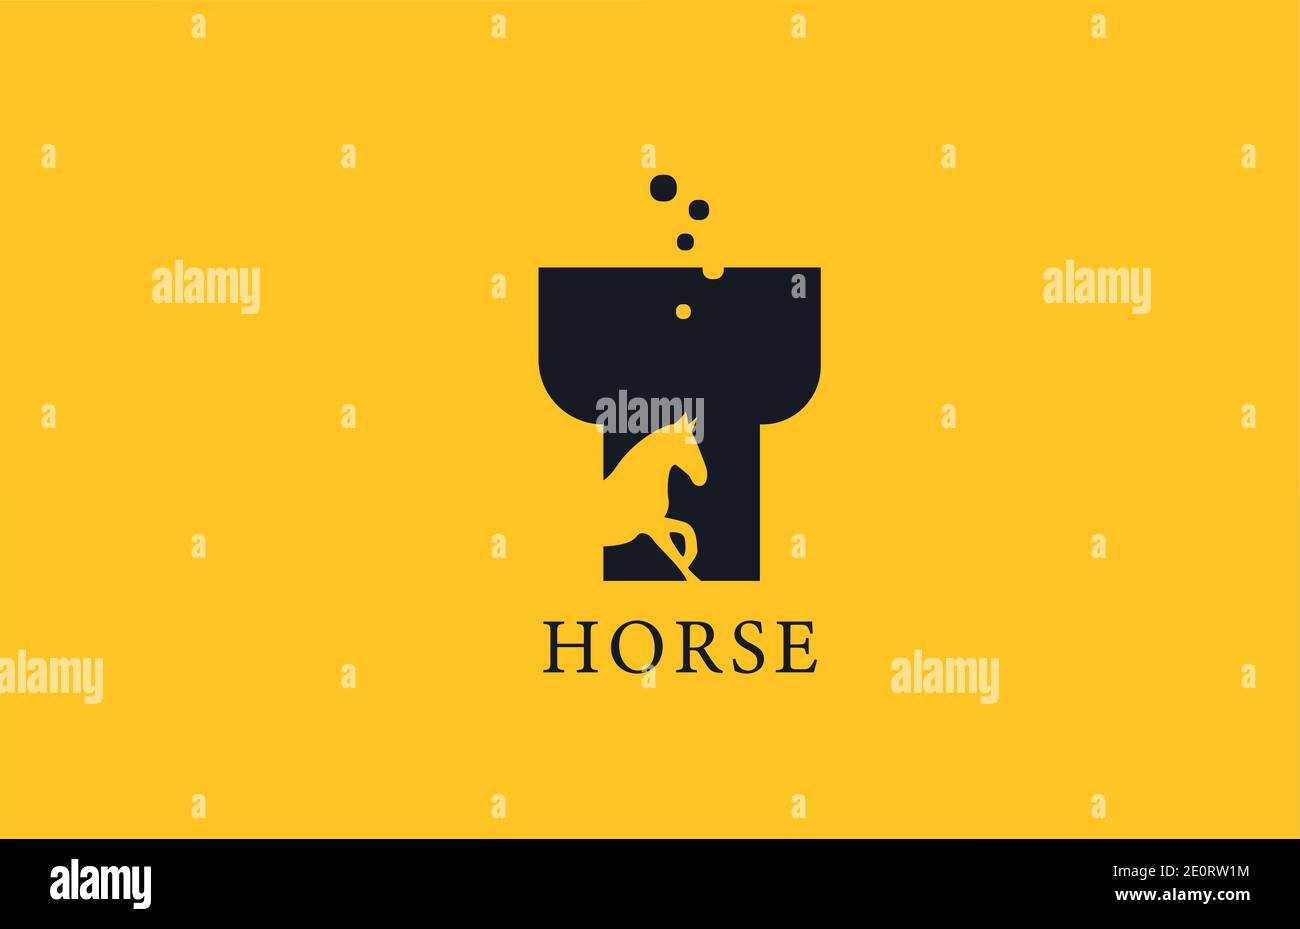 T icona gialla con il logo della lettera dell'alfabeto a cavallo nero con la forma dello stallone all'interno. Design creativo per aziende e aziende Illustrazione Vettoriale